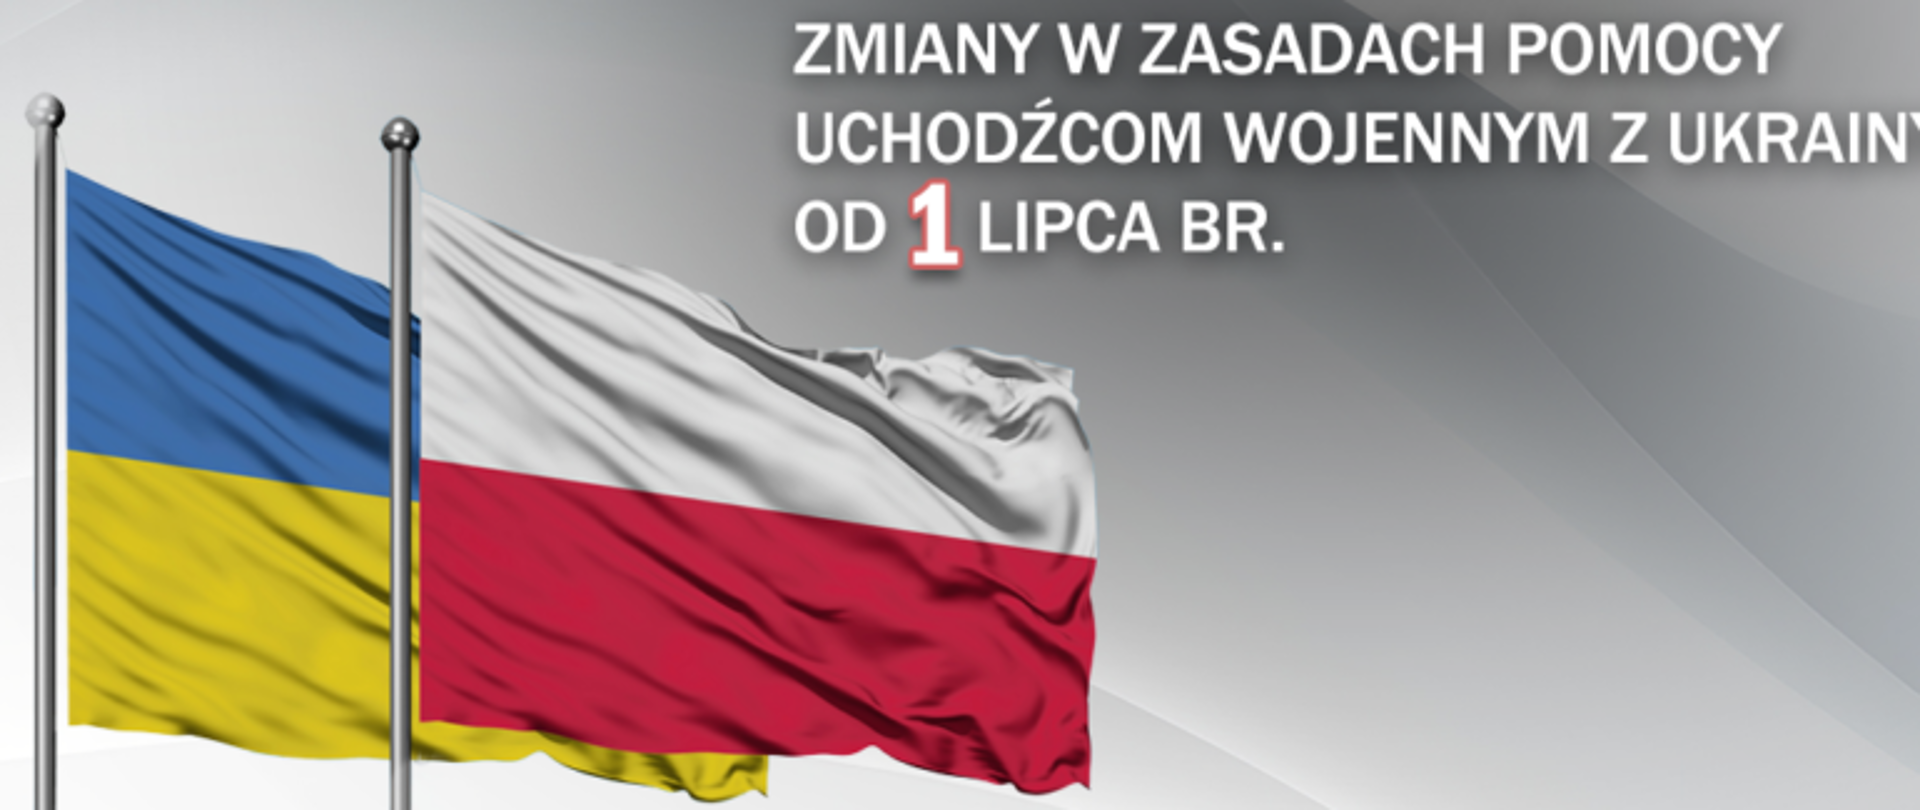 Flaga polska i ukraińska w tle oraz napis Zmiany w zasadach pomocy uchodźcom wojennym z Ukrainy od 1 lipca br. 